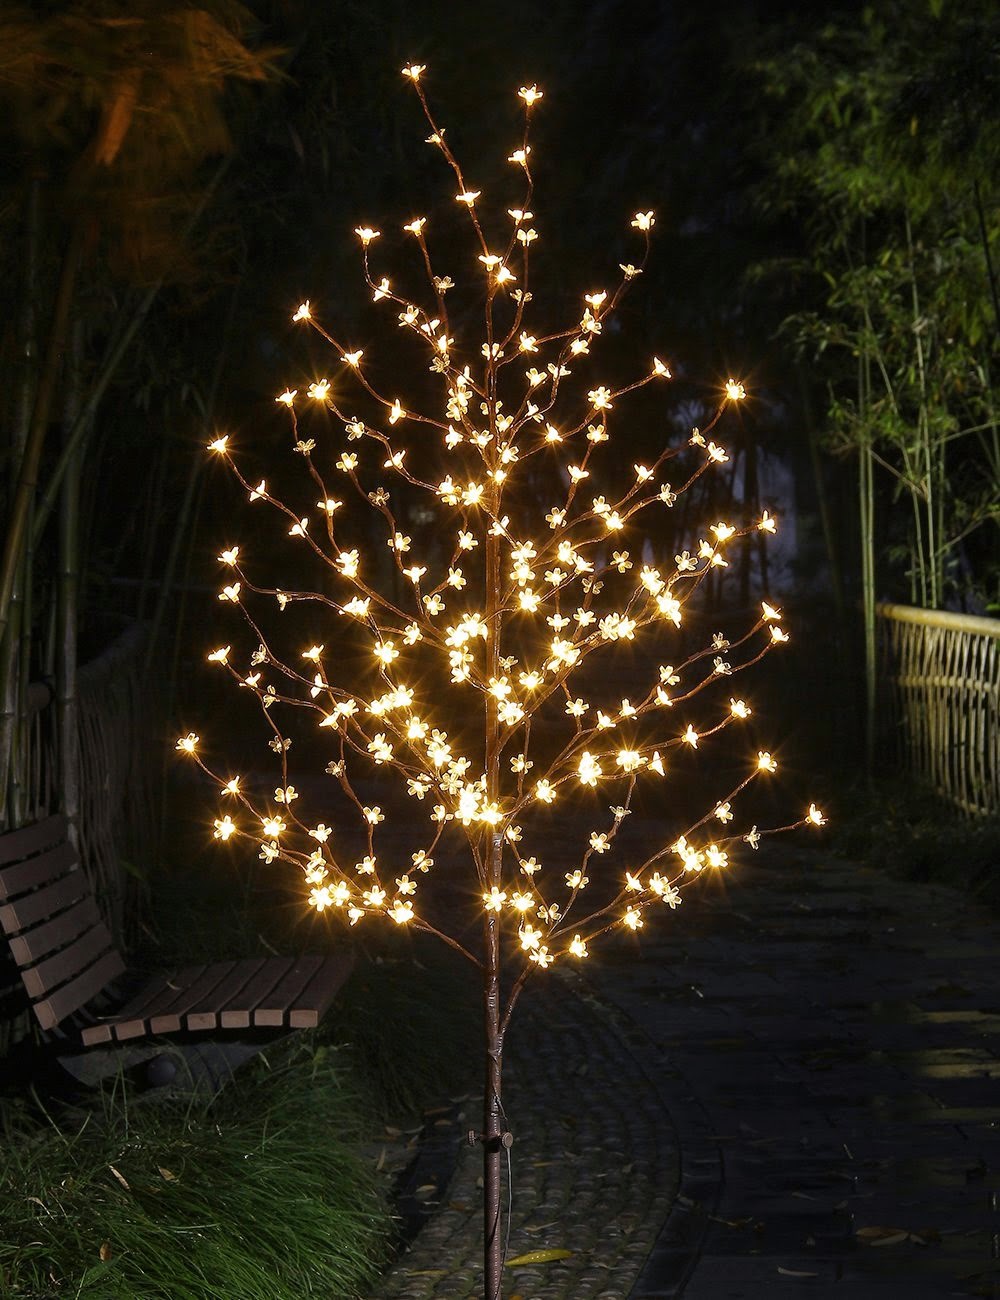 Lightshare: How Do You Use Christmas Lights for Home Decor After Christmas Season?